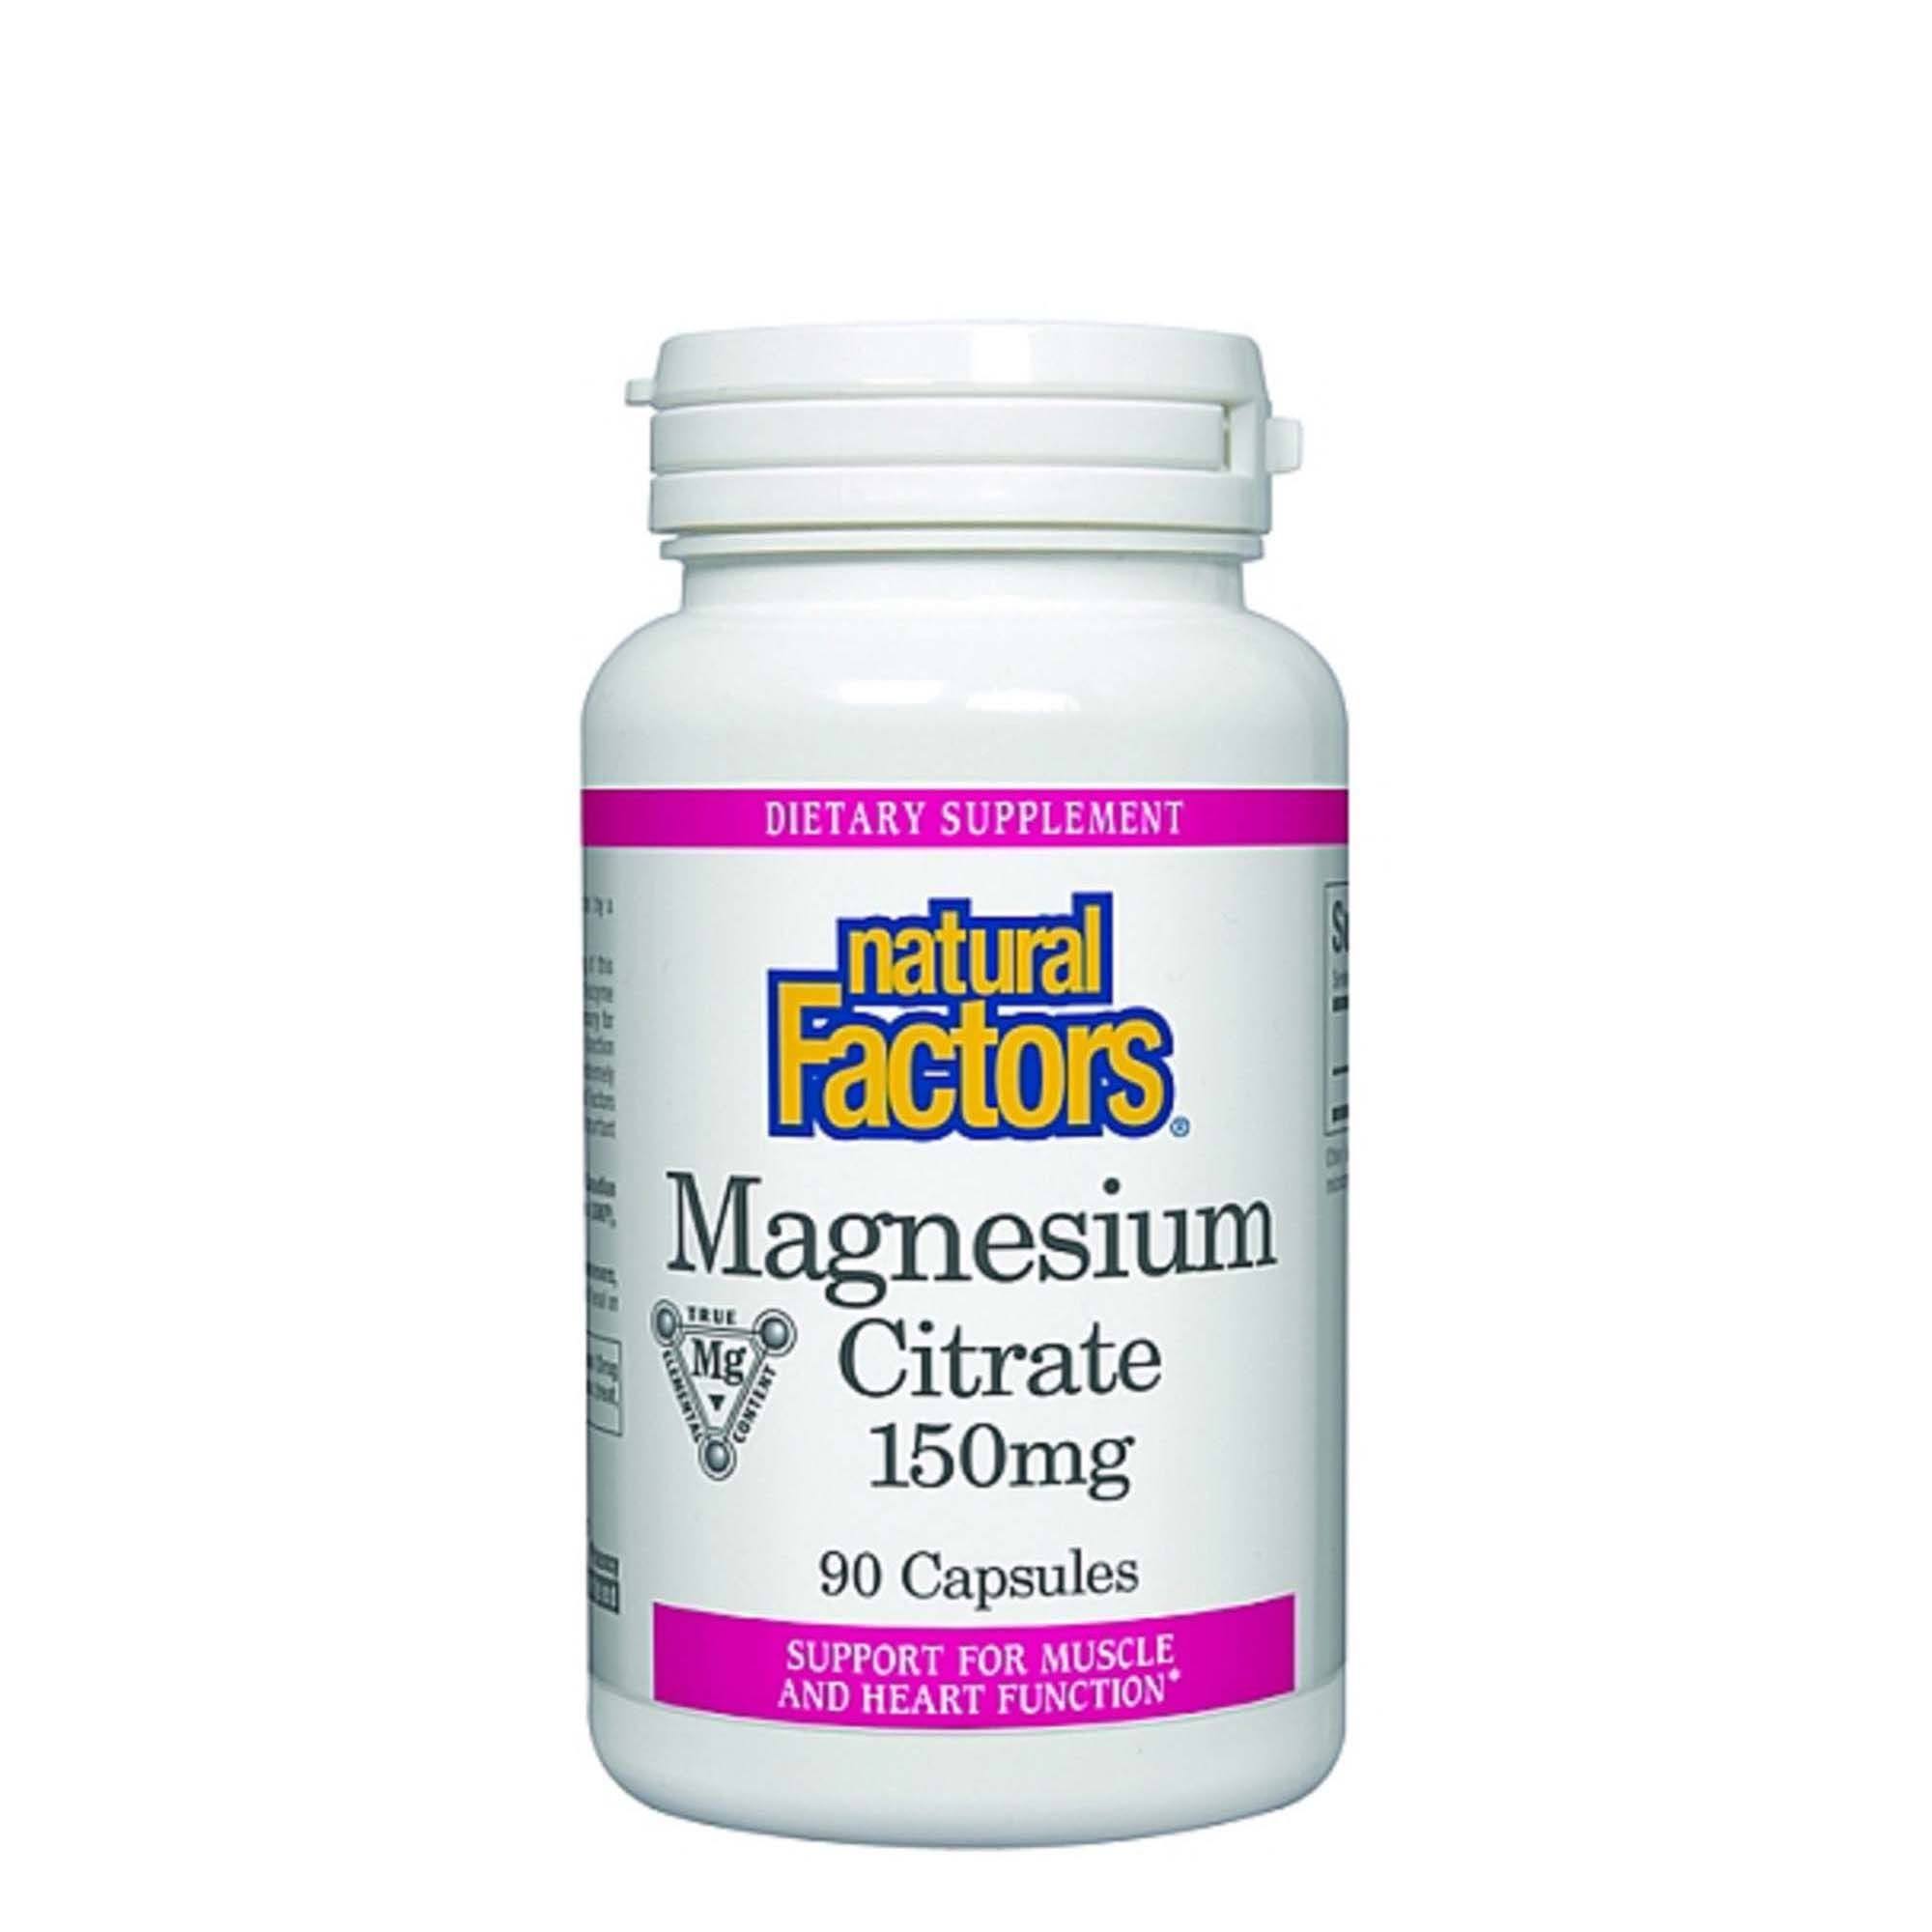 Natural Factors Magnesium Citrate, 150 mg, Capsules - 90 capsules